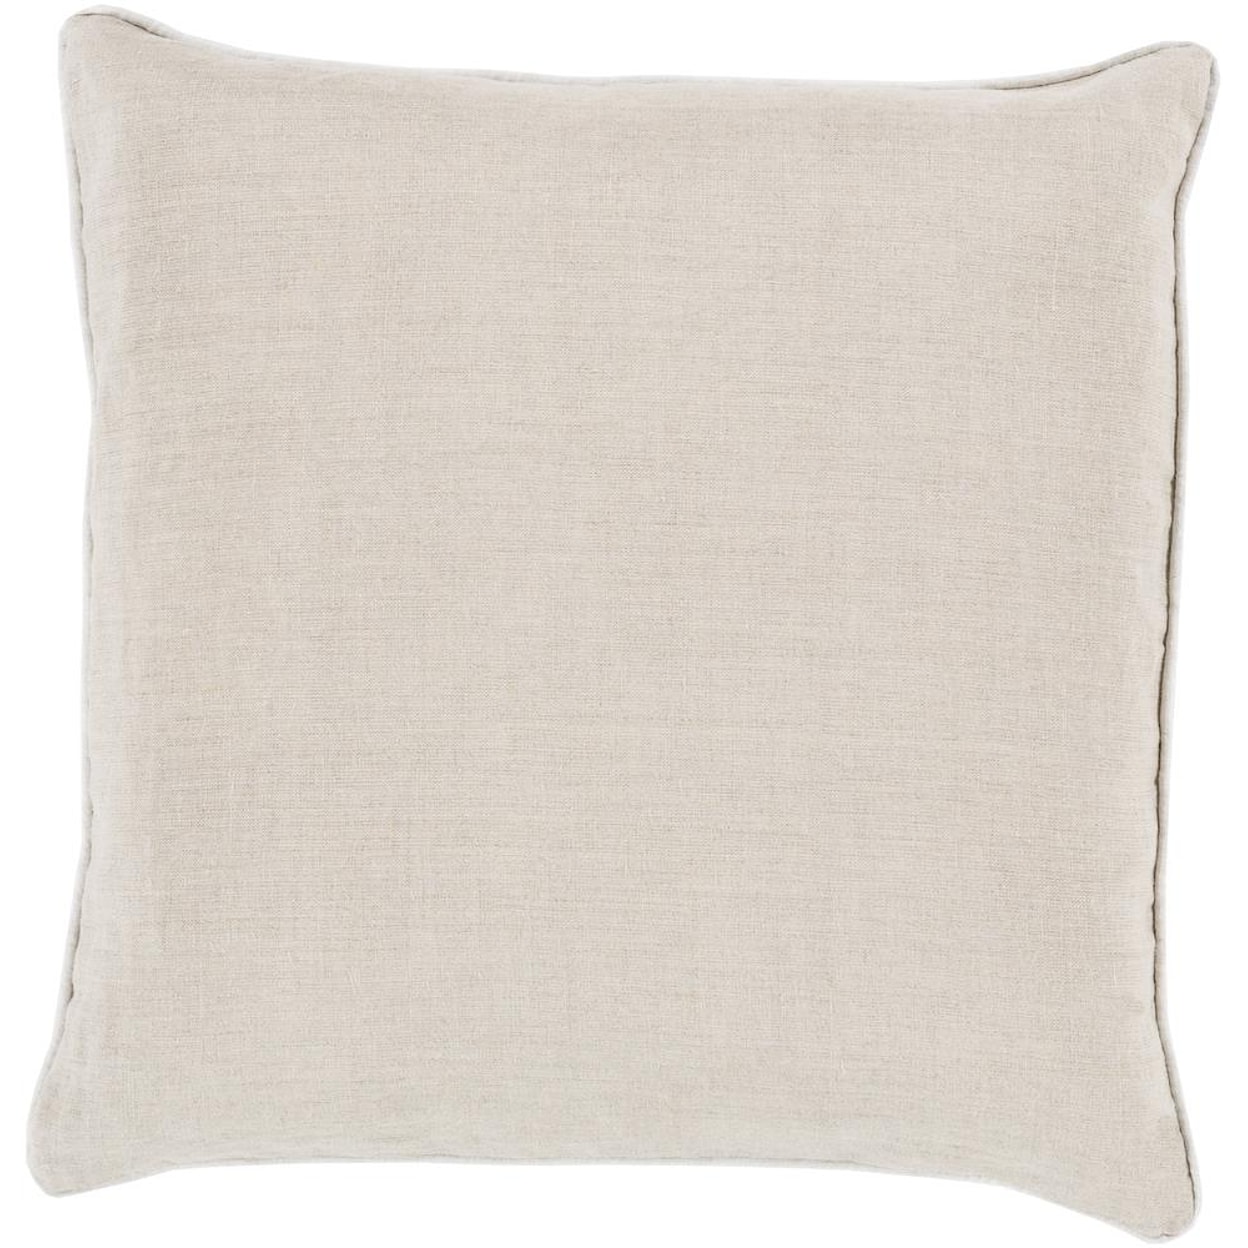 Surya Pillows 22" x 22" Linen Piped Pillow